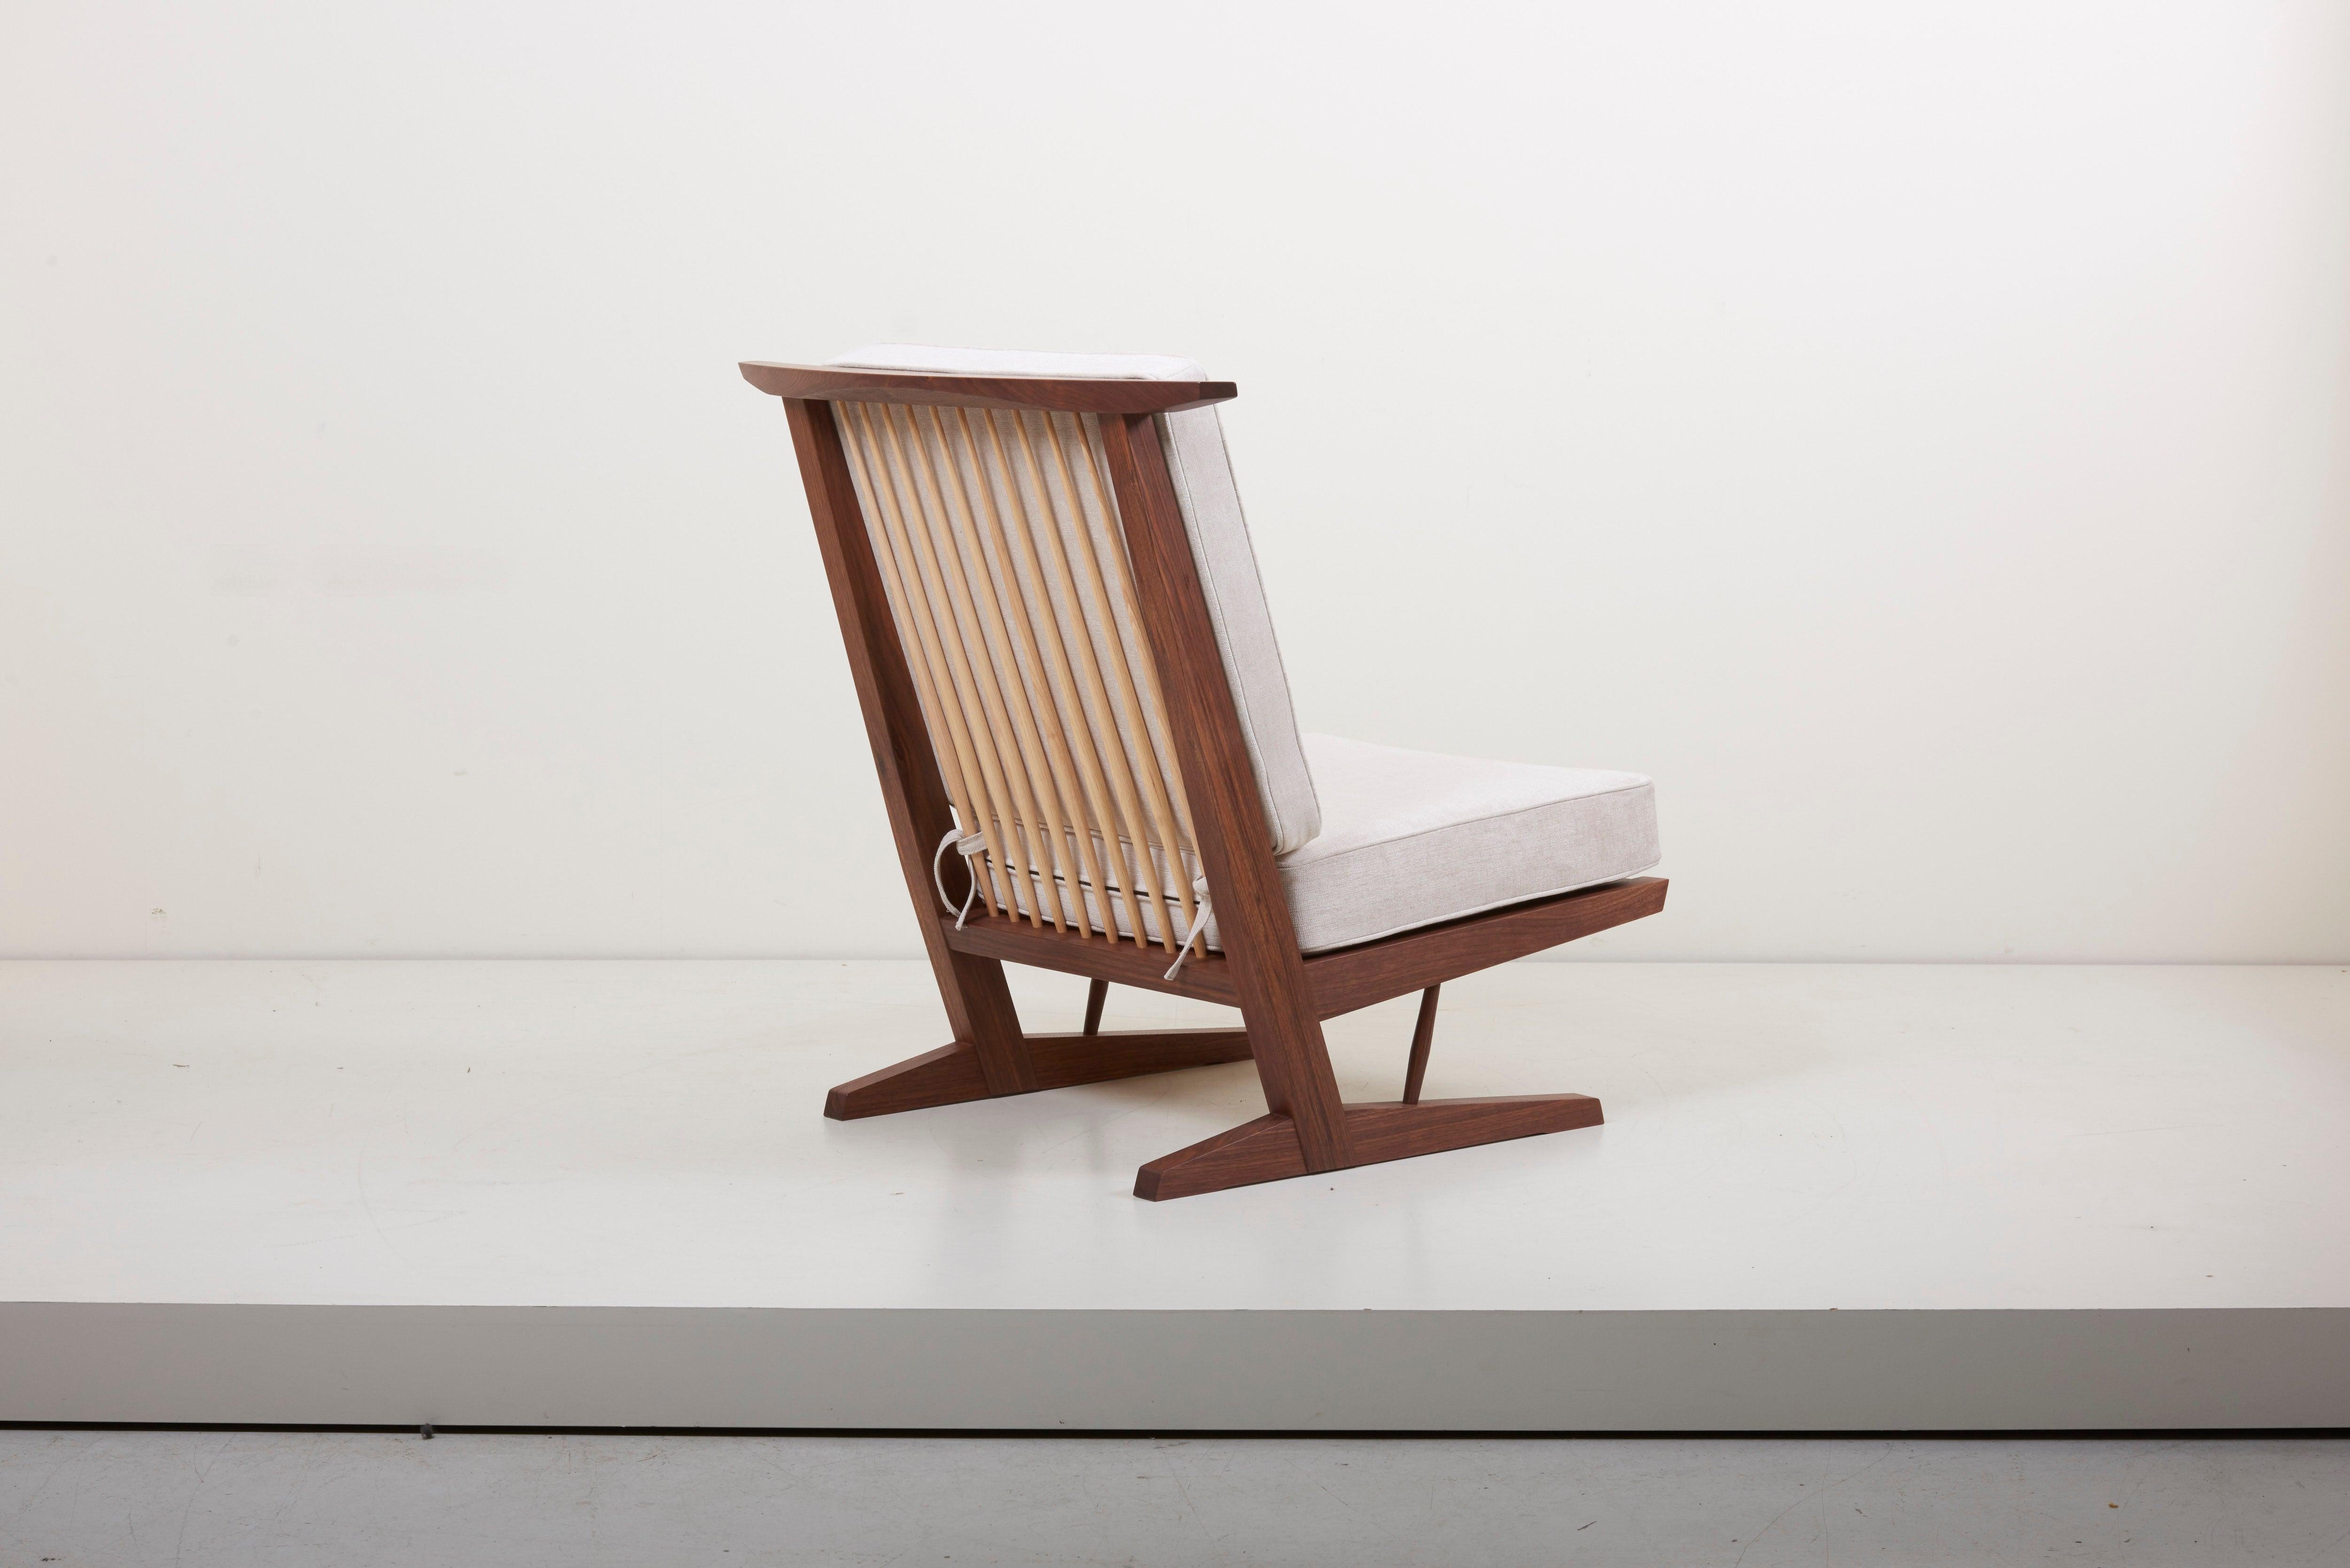 Conoid Lounge Chair aus amerikanischem Schwarznussbaum mit Hickoryspindeln von Mira Nakashima. Basierend auf einem Entwurf von George Nakashima.

Neu gepolstert mit Mark Alexander Stoff. Die Produktionsvorlaufzeit beträgt etwa 18 Monate.